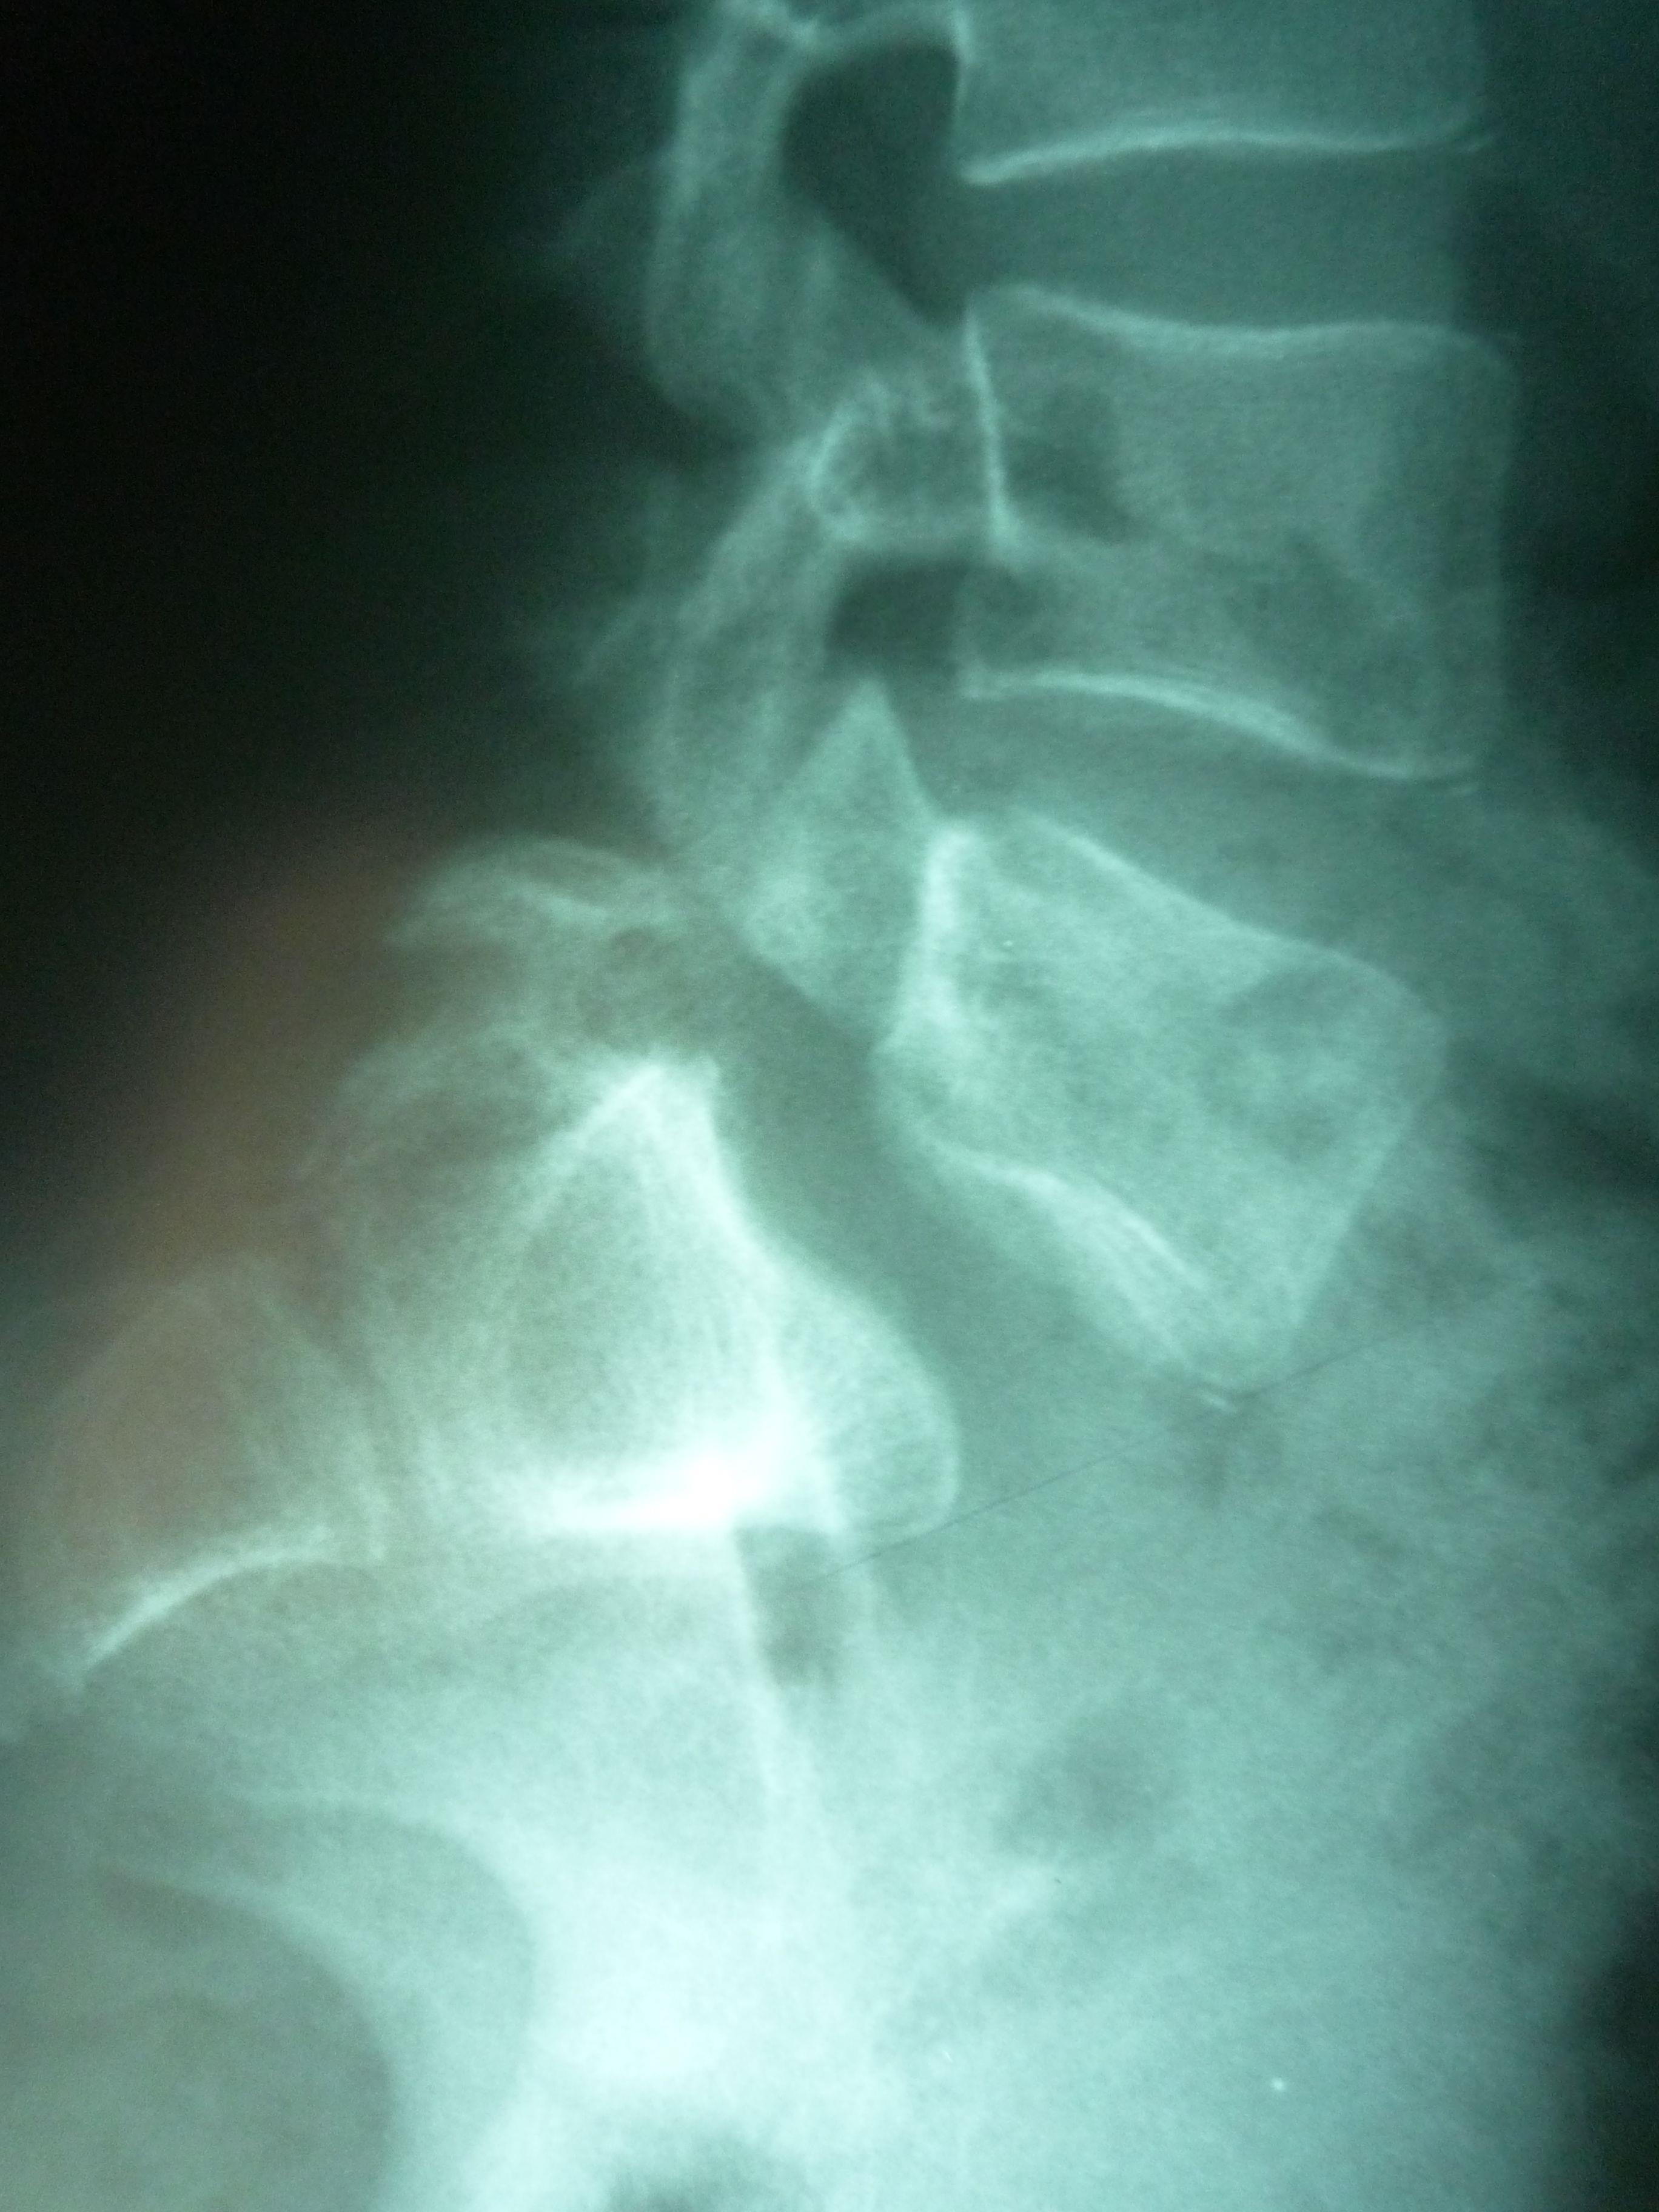    Ryc.   Obraz radiologiczny kręgozmyku – częściowe przemieszczenie trzonów kręgów L5–S1 na zdjęciu radiologicznym w projekcji bocznej 